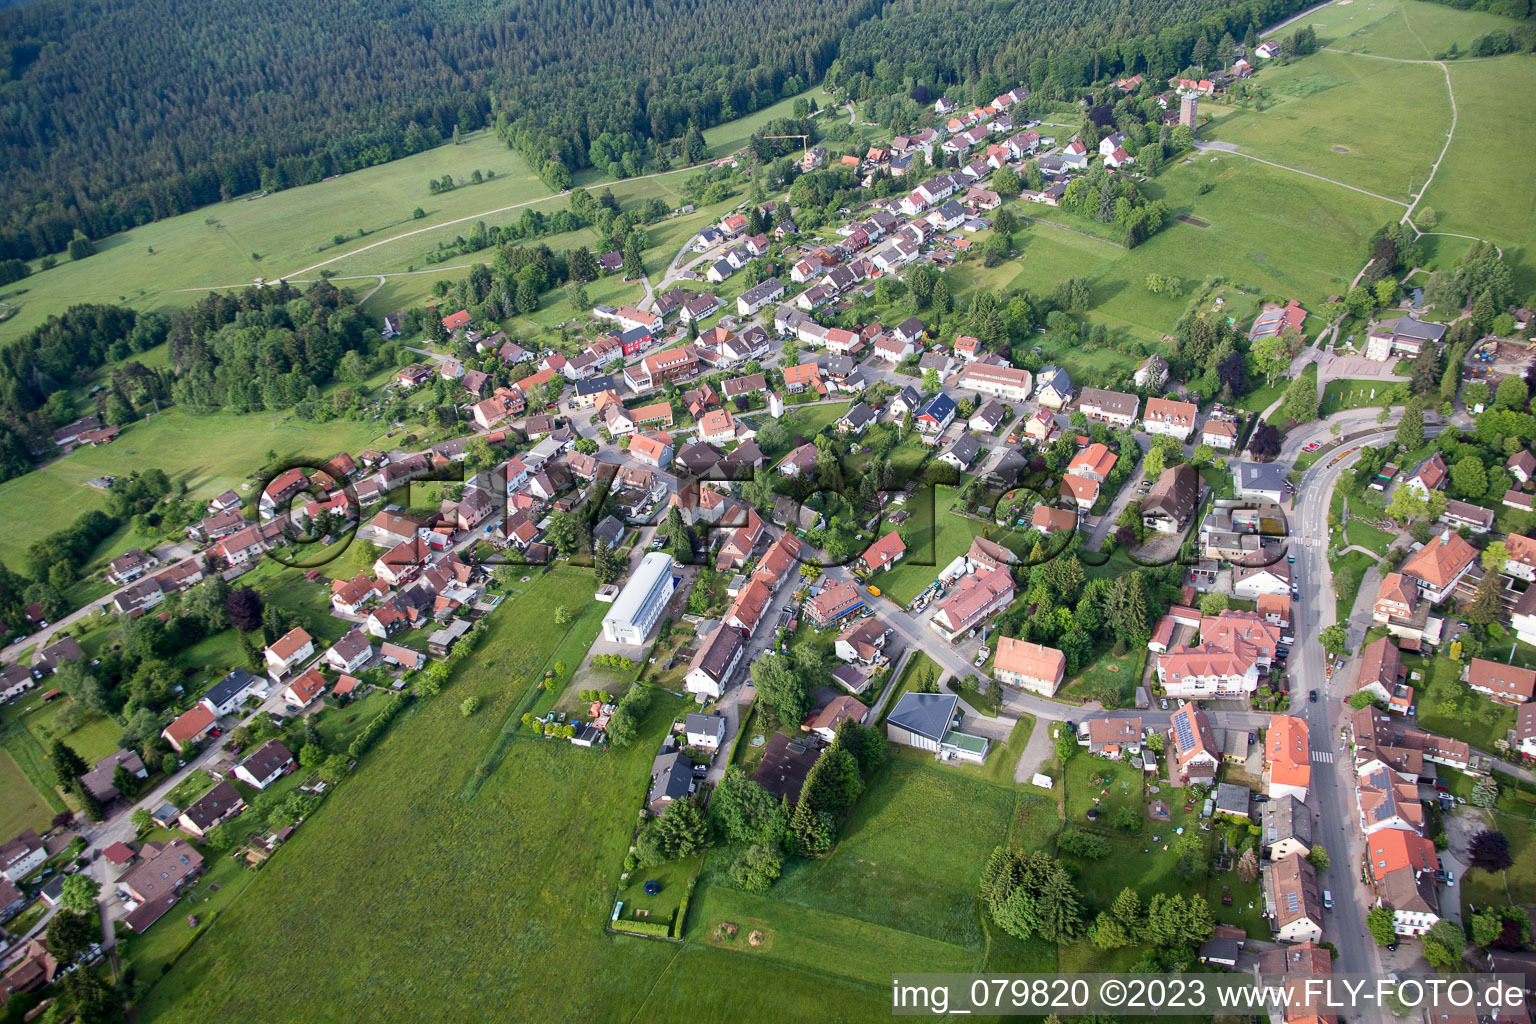 Dobel im Bundesland Baden-Württemberg, Deutschland aus der Luft betrachtet